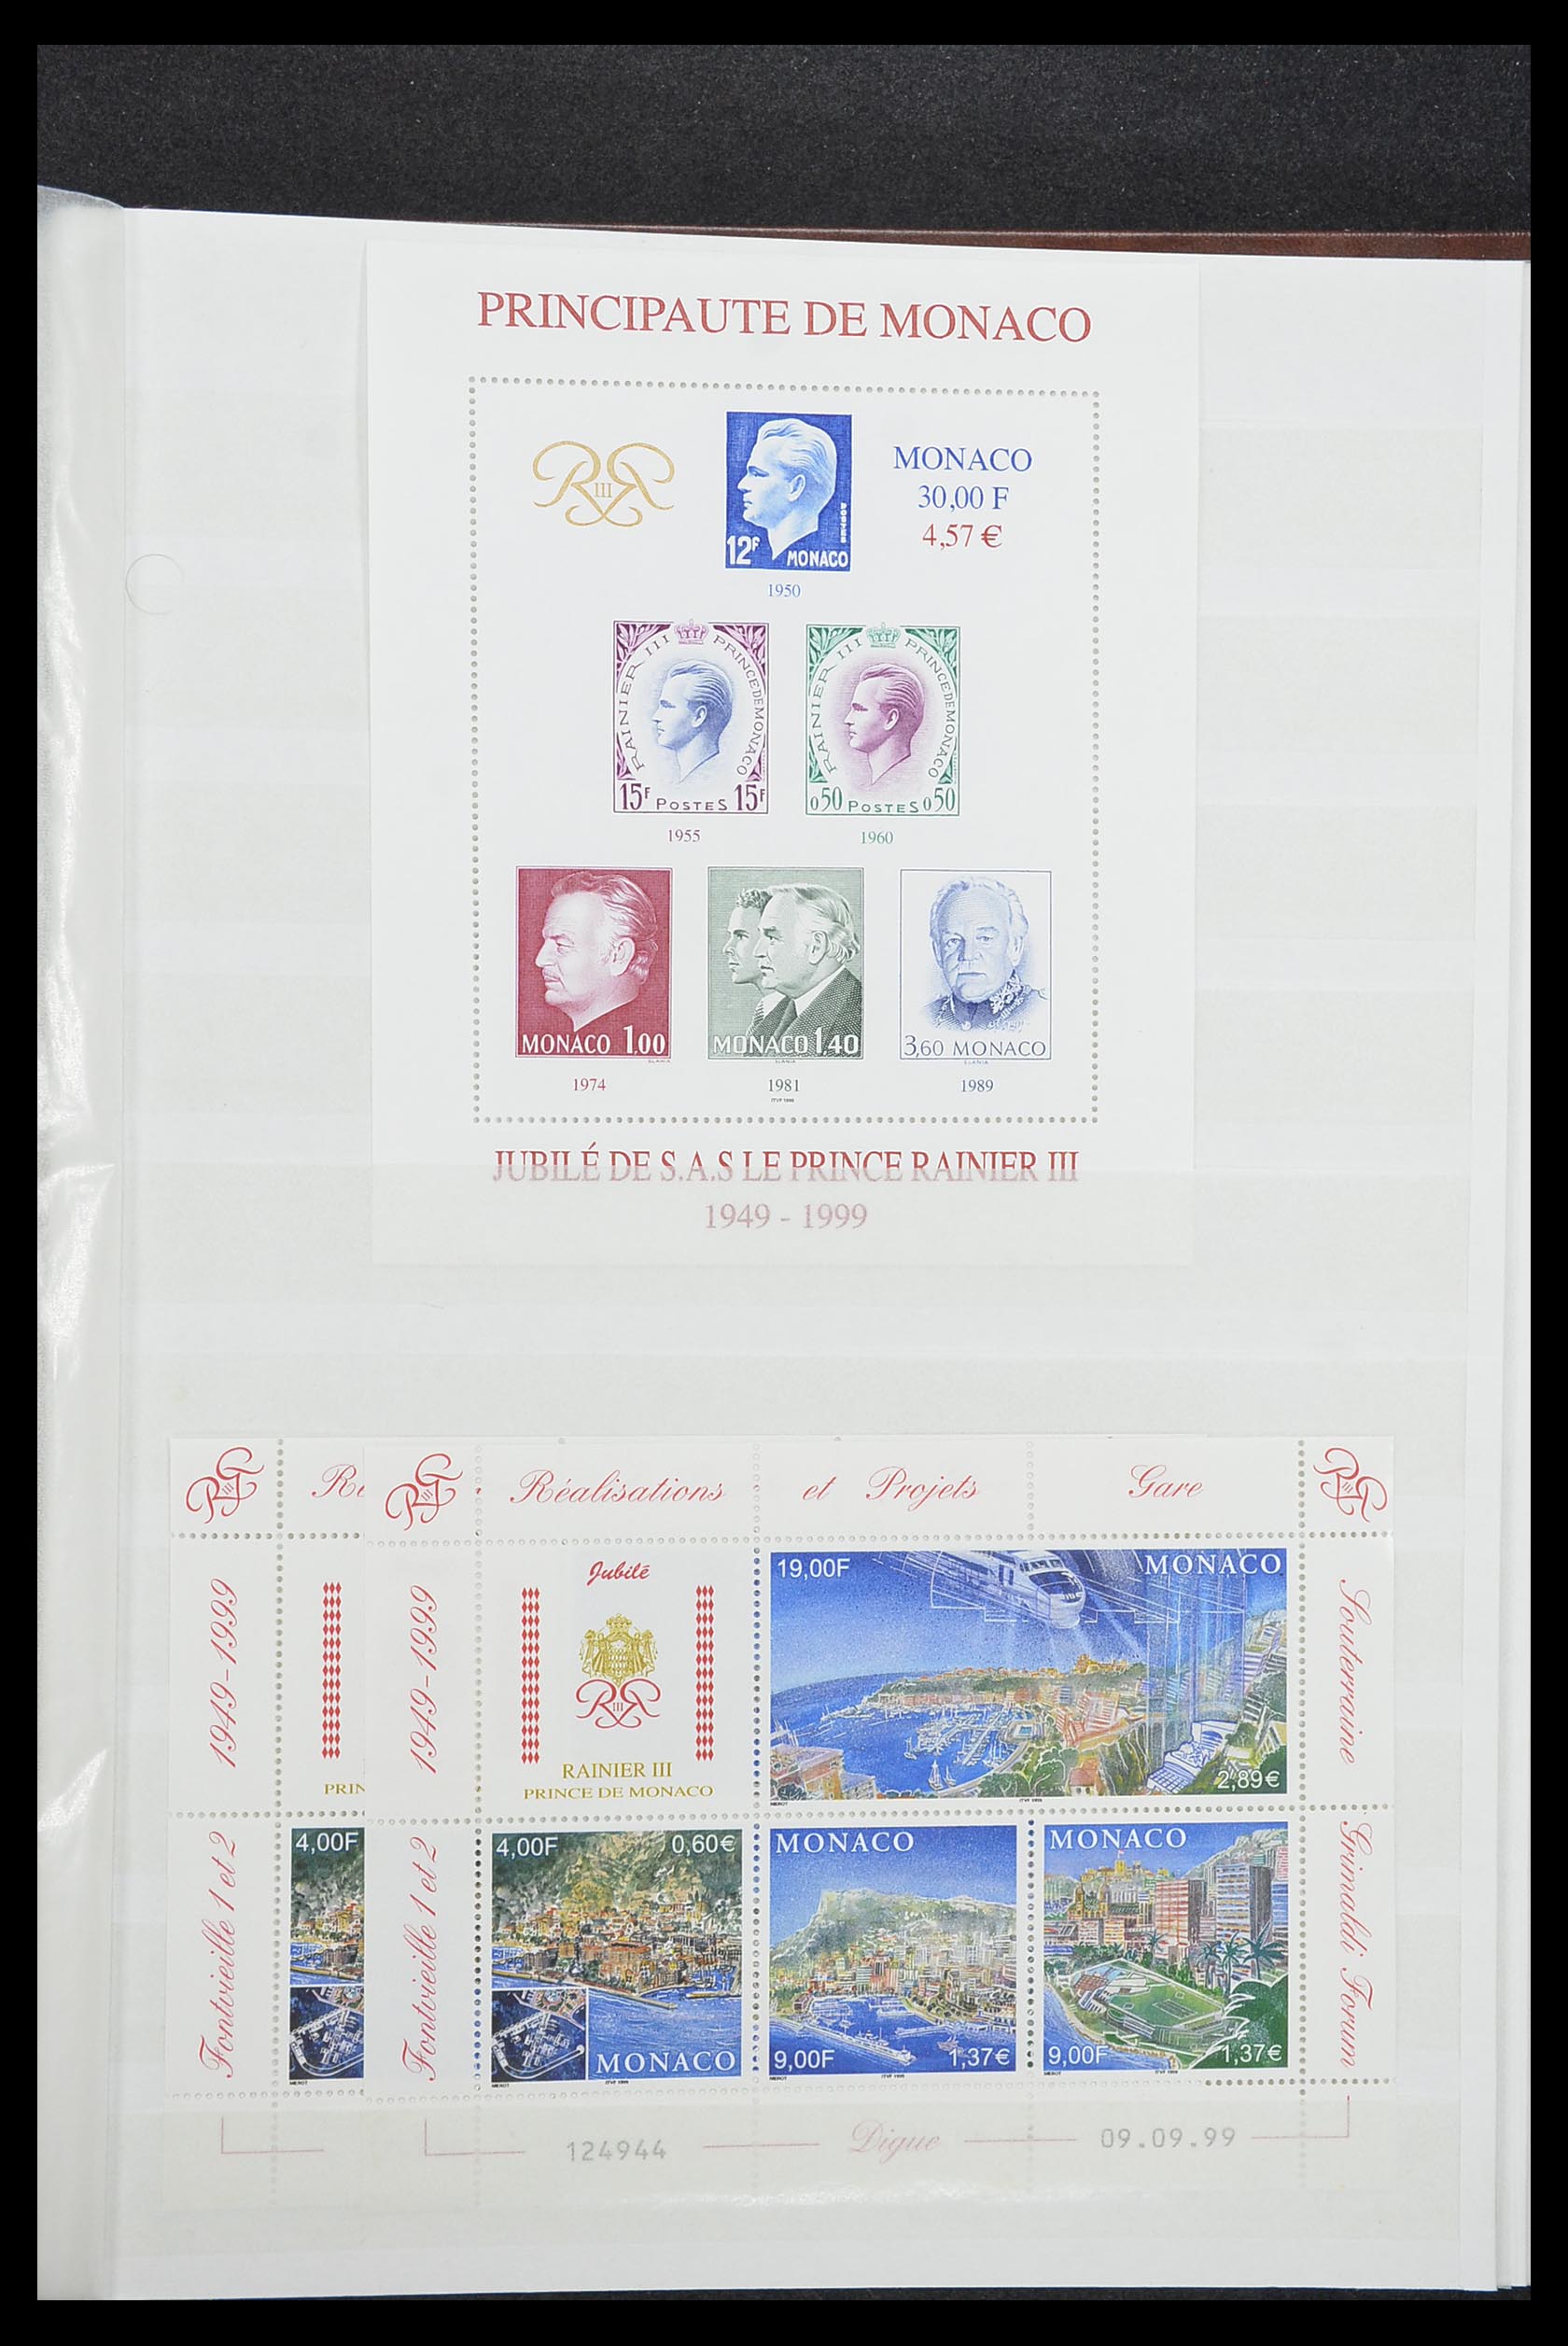 33833 041 - Stamp collection 33833 Monaco souvenir sheets 1979-2015.